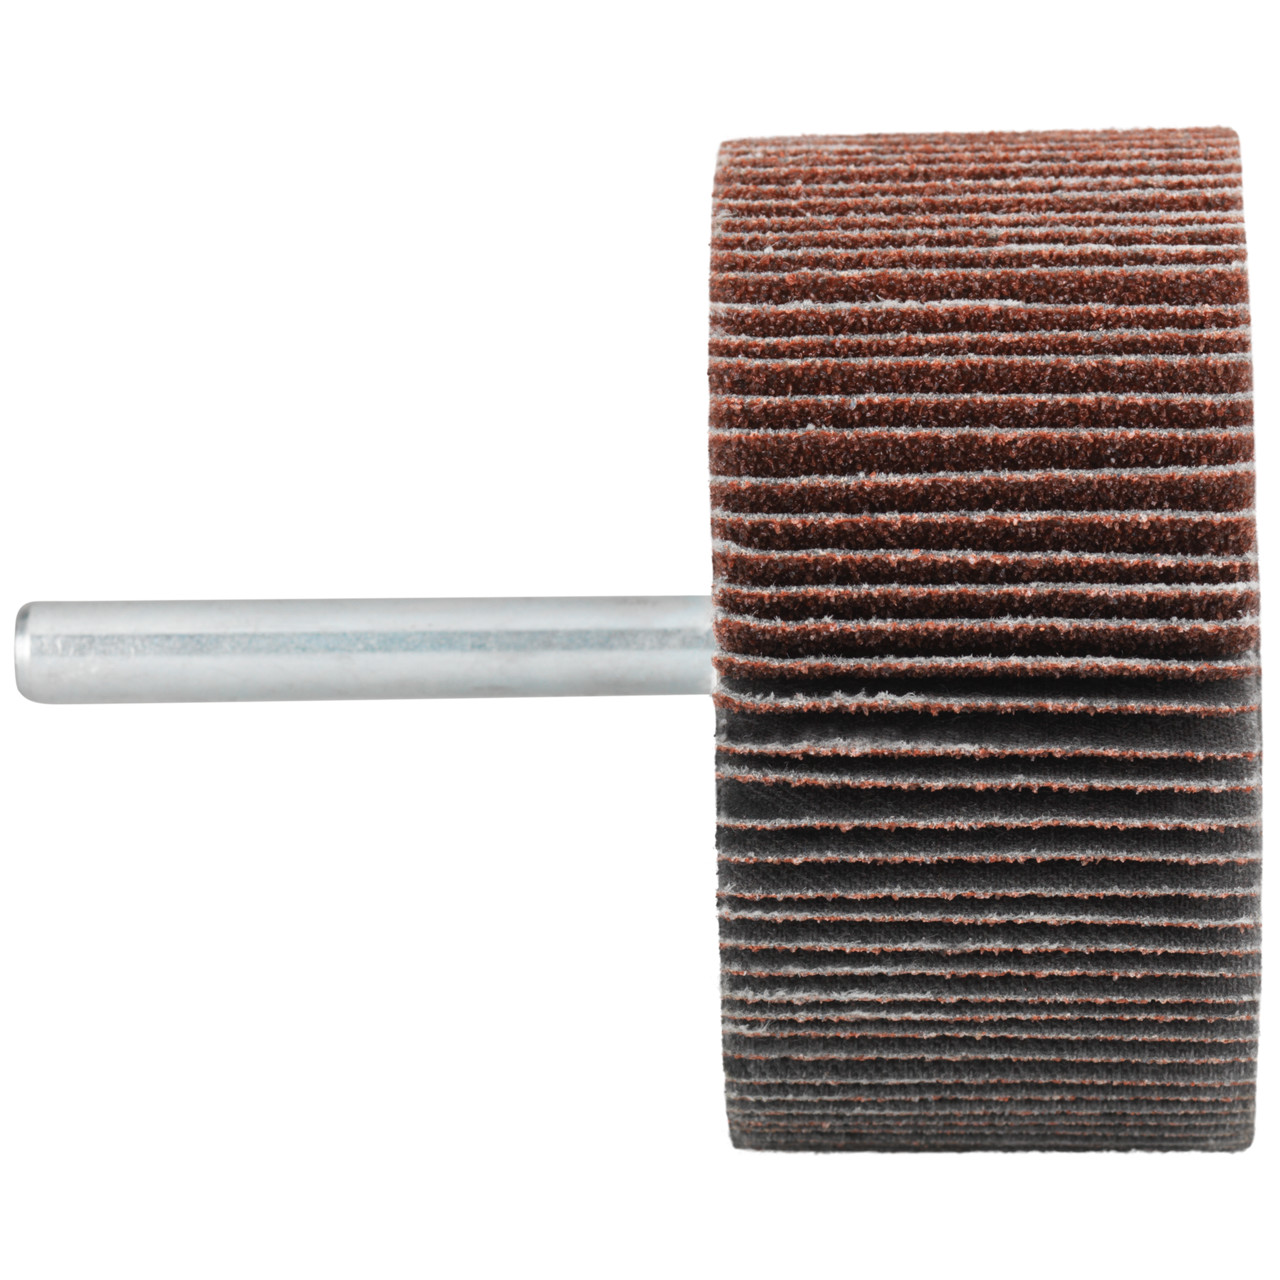 Tyrolit A-P01 C X Pennen DxD 80x20 Voor staal, roestvast staal en non-ferrometalen, P60, vorm: 52LA, Art. 816976